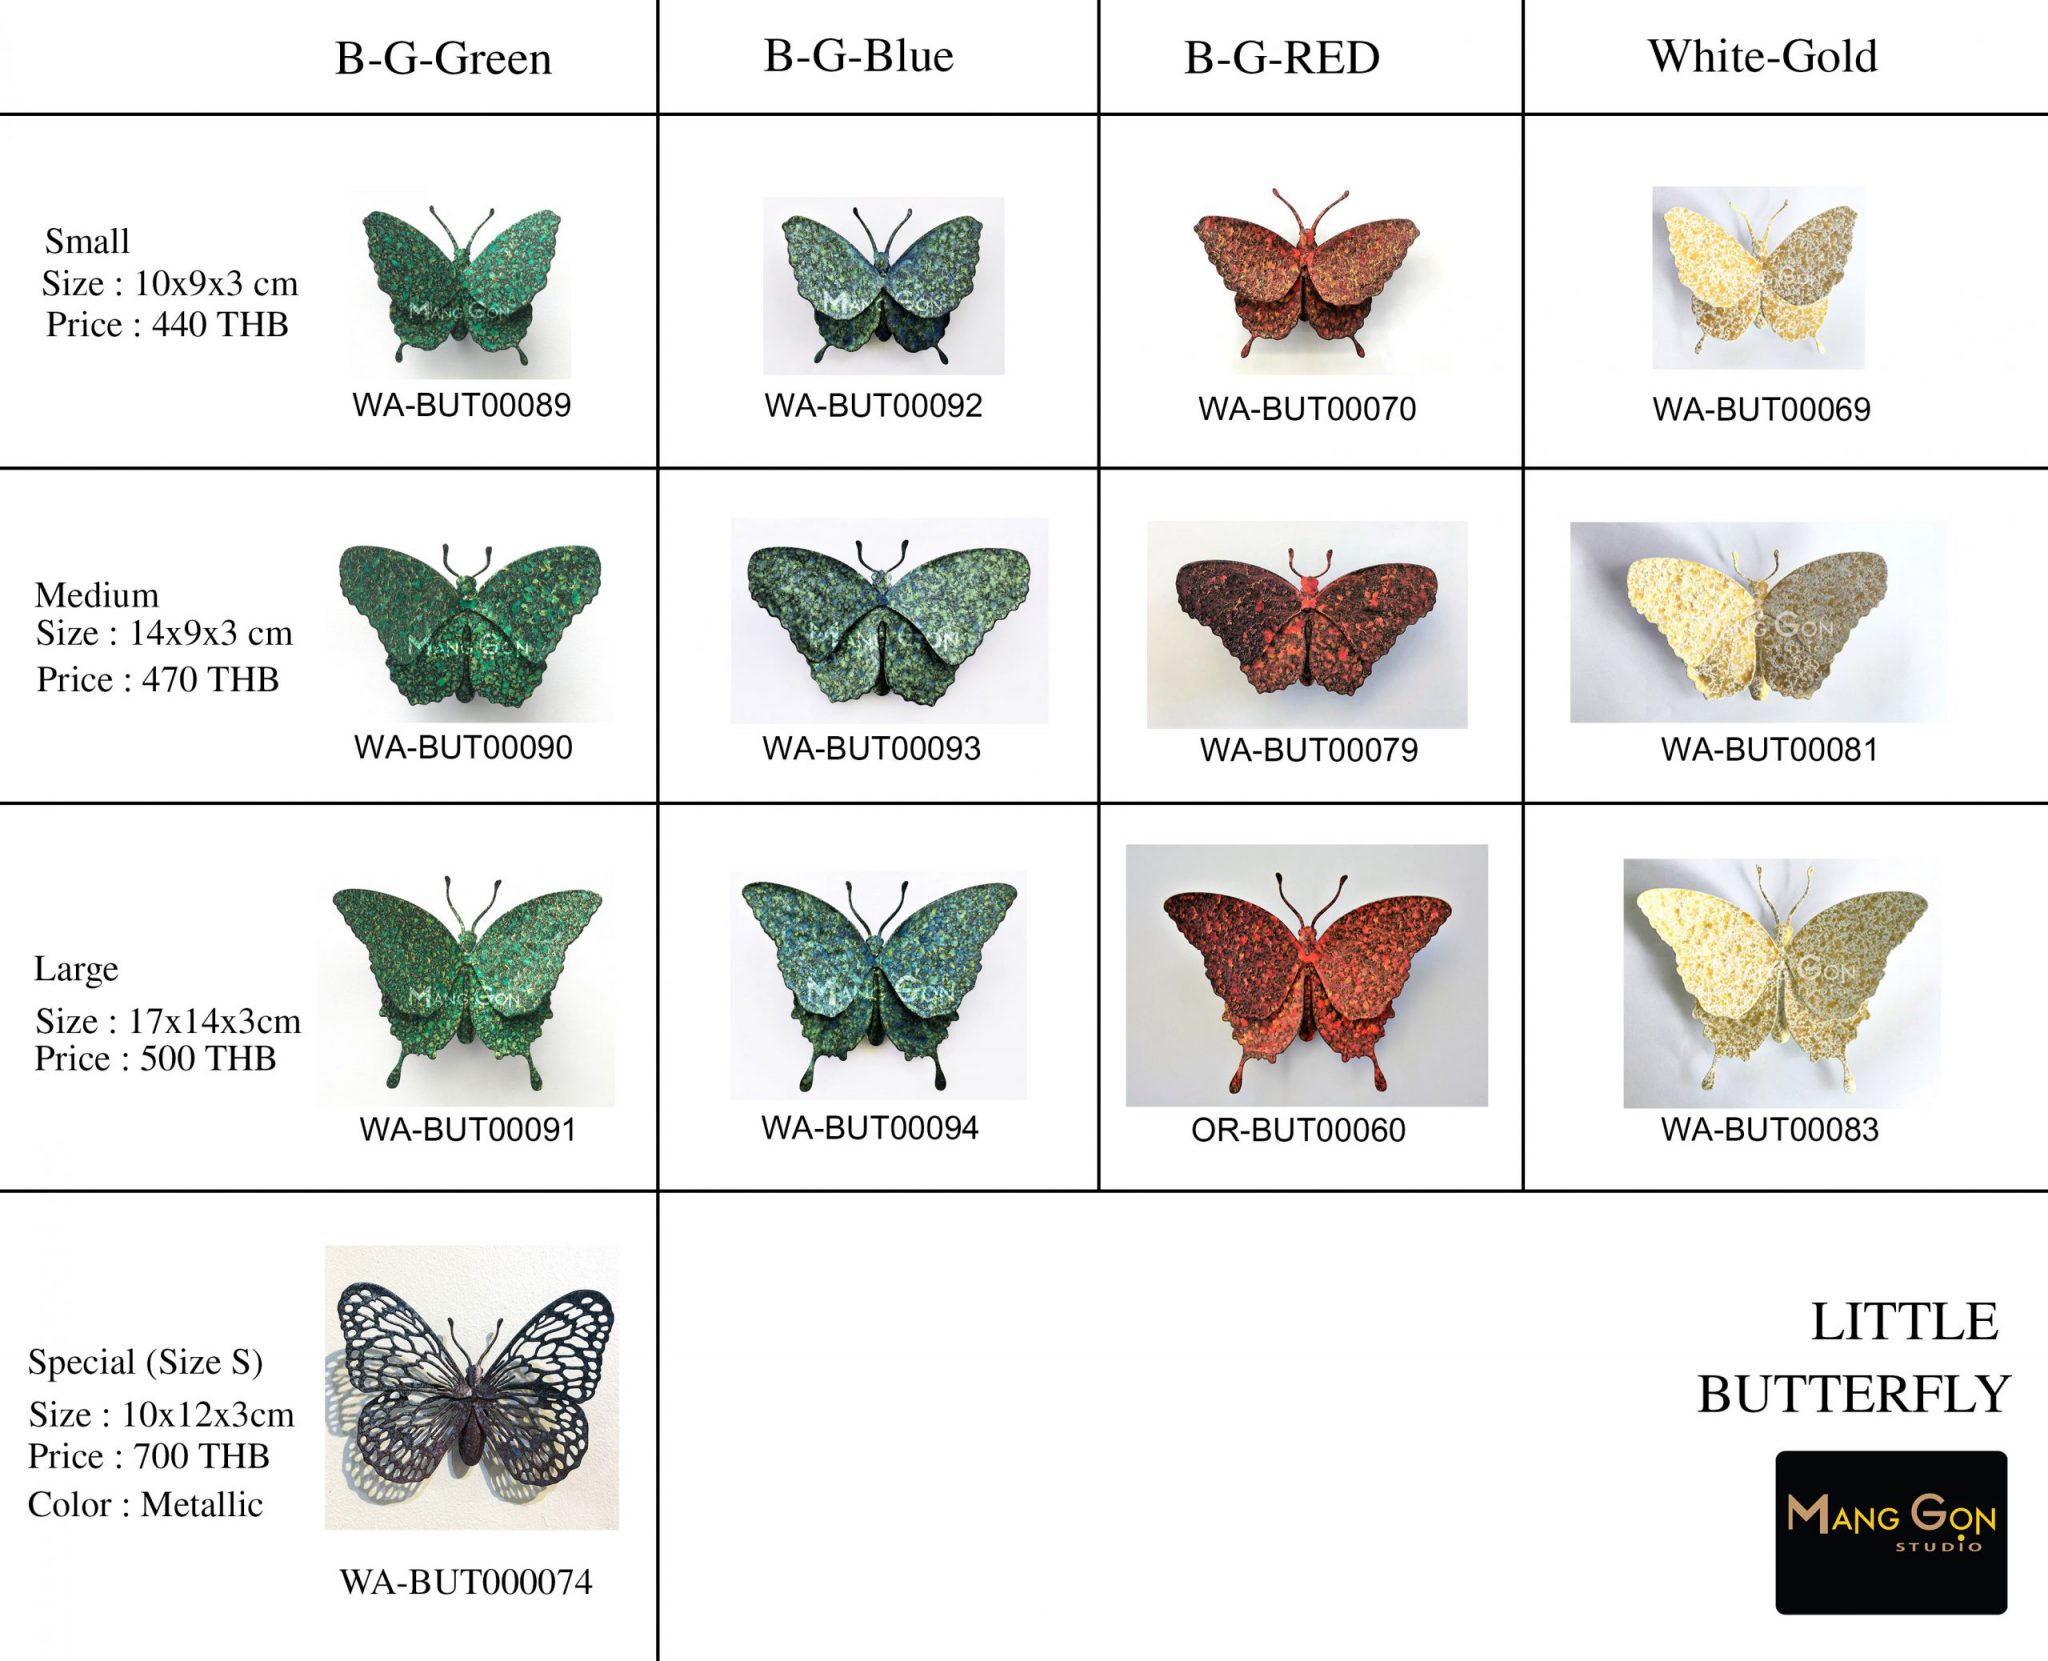 Little Butterfly Chart